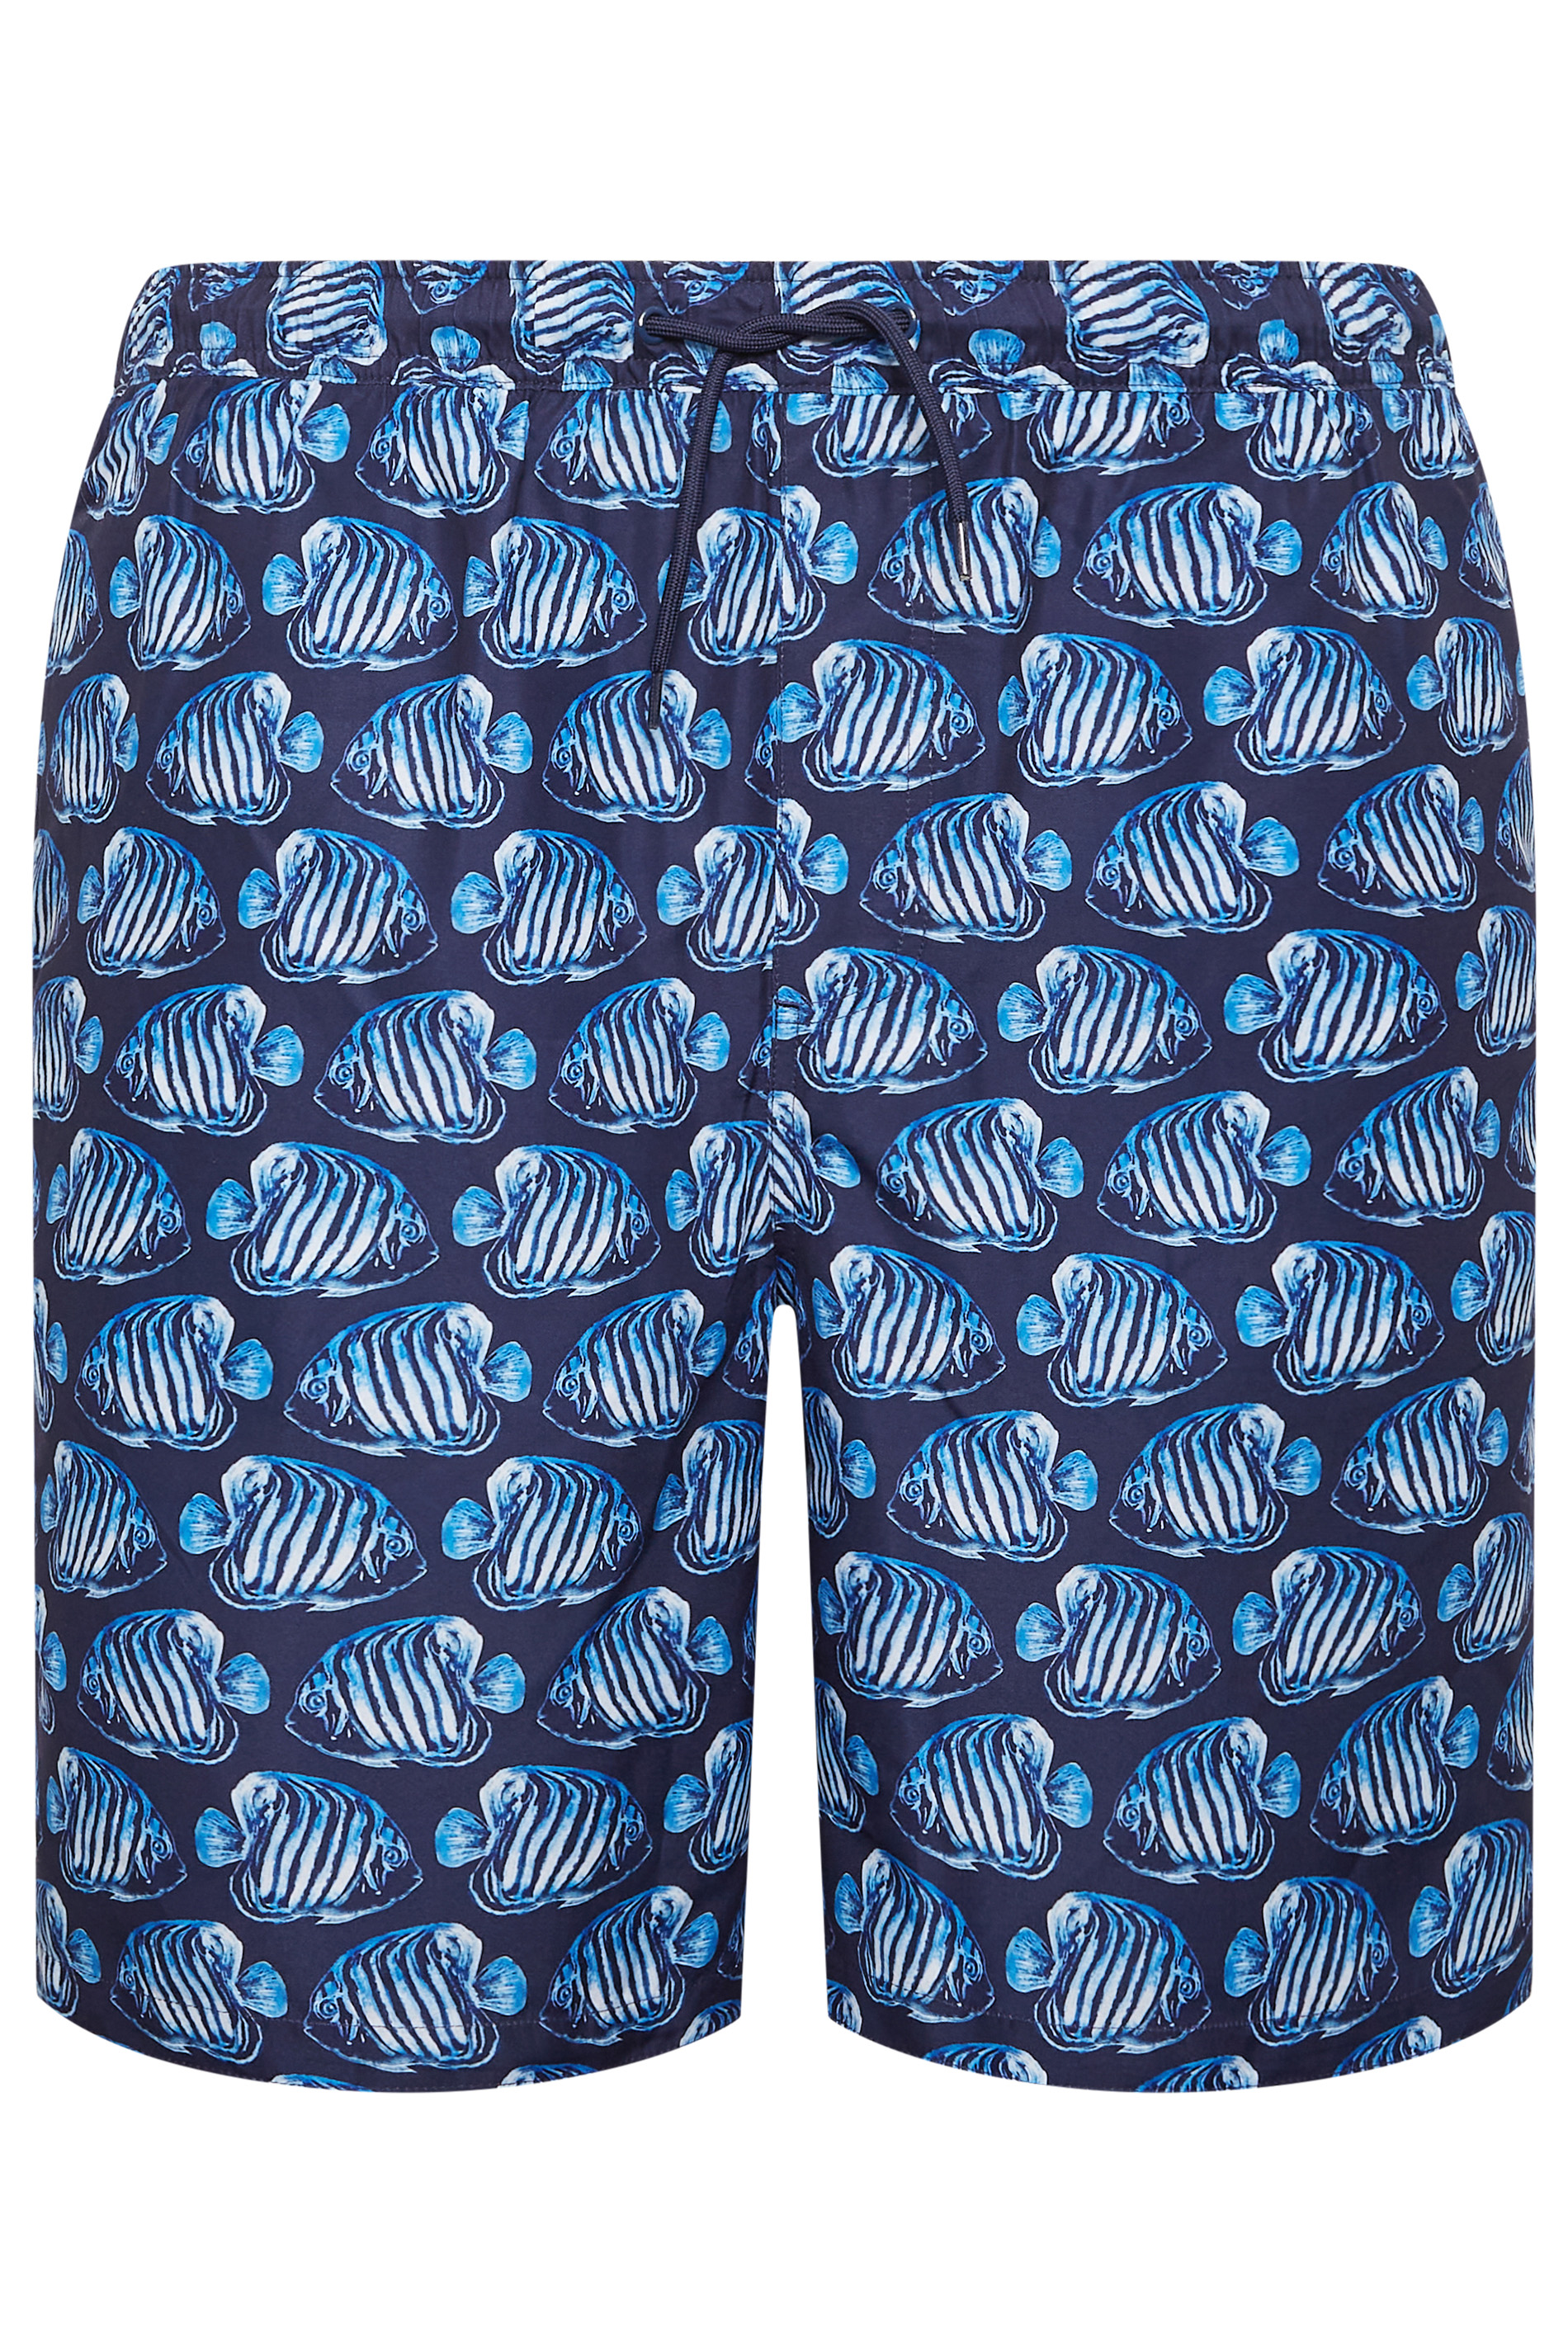 BadRhino Big & Tall Navy Blue Fish Print Swim Shorts | BadRhino